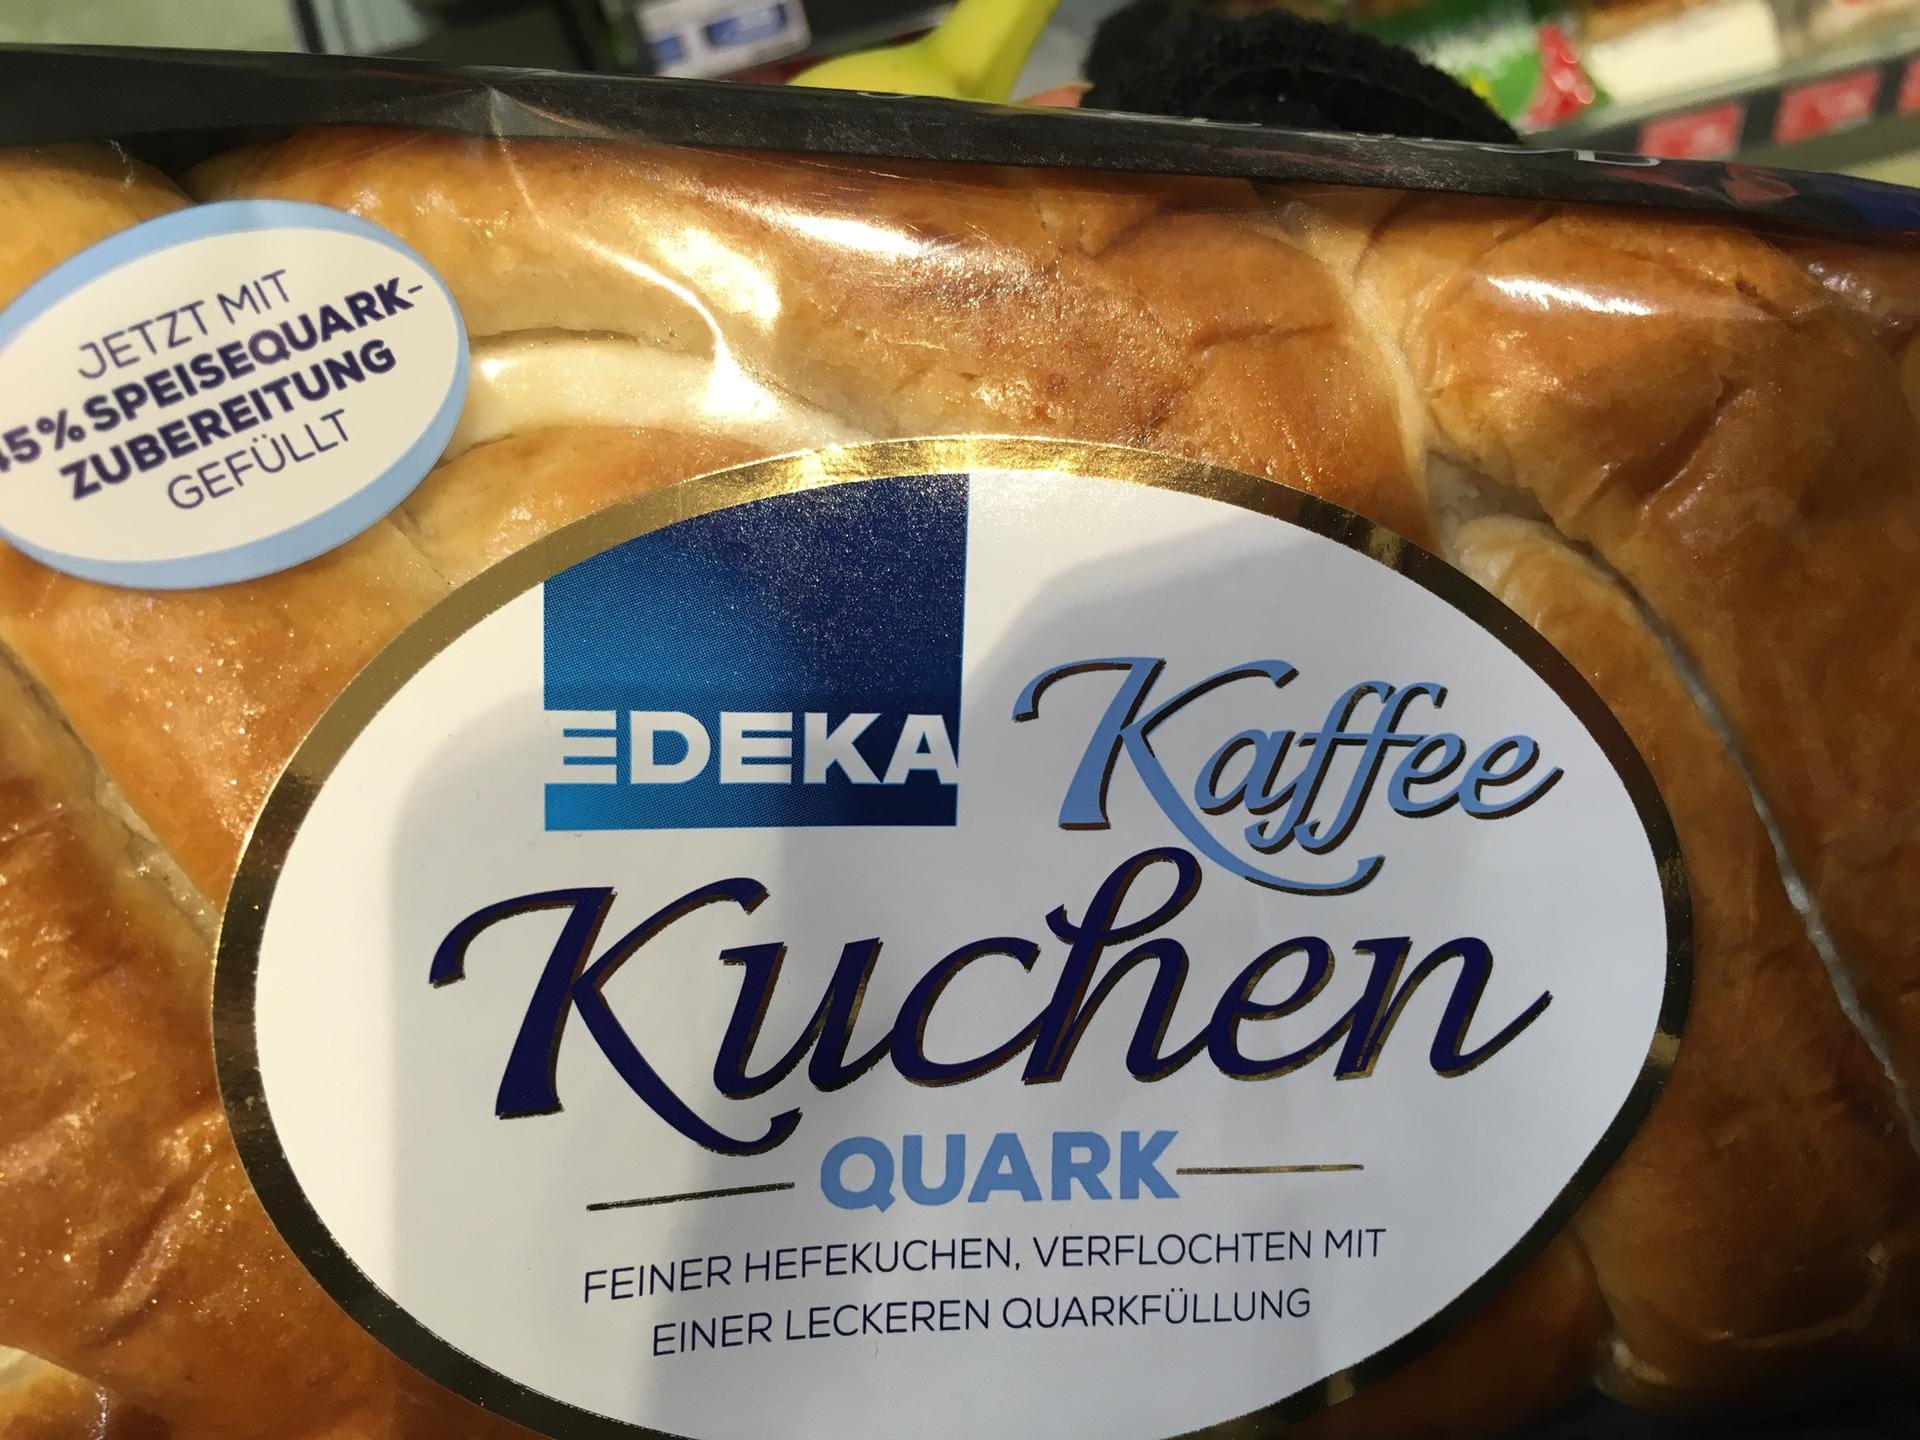 Kuchen: Der feine Hefekuchen von Edeka wirbt mit einer "leckeren Quarkfüllung" ...